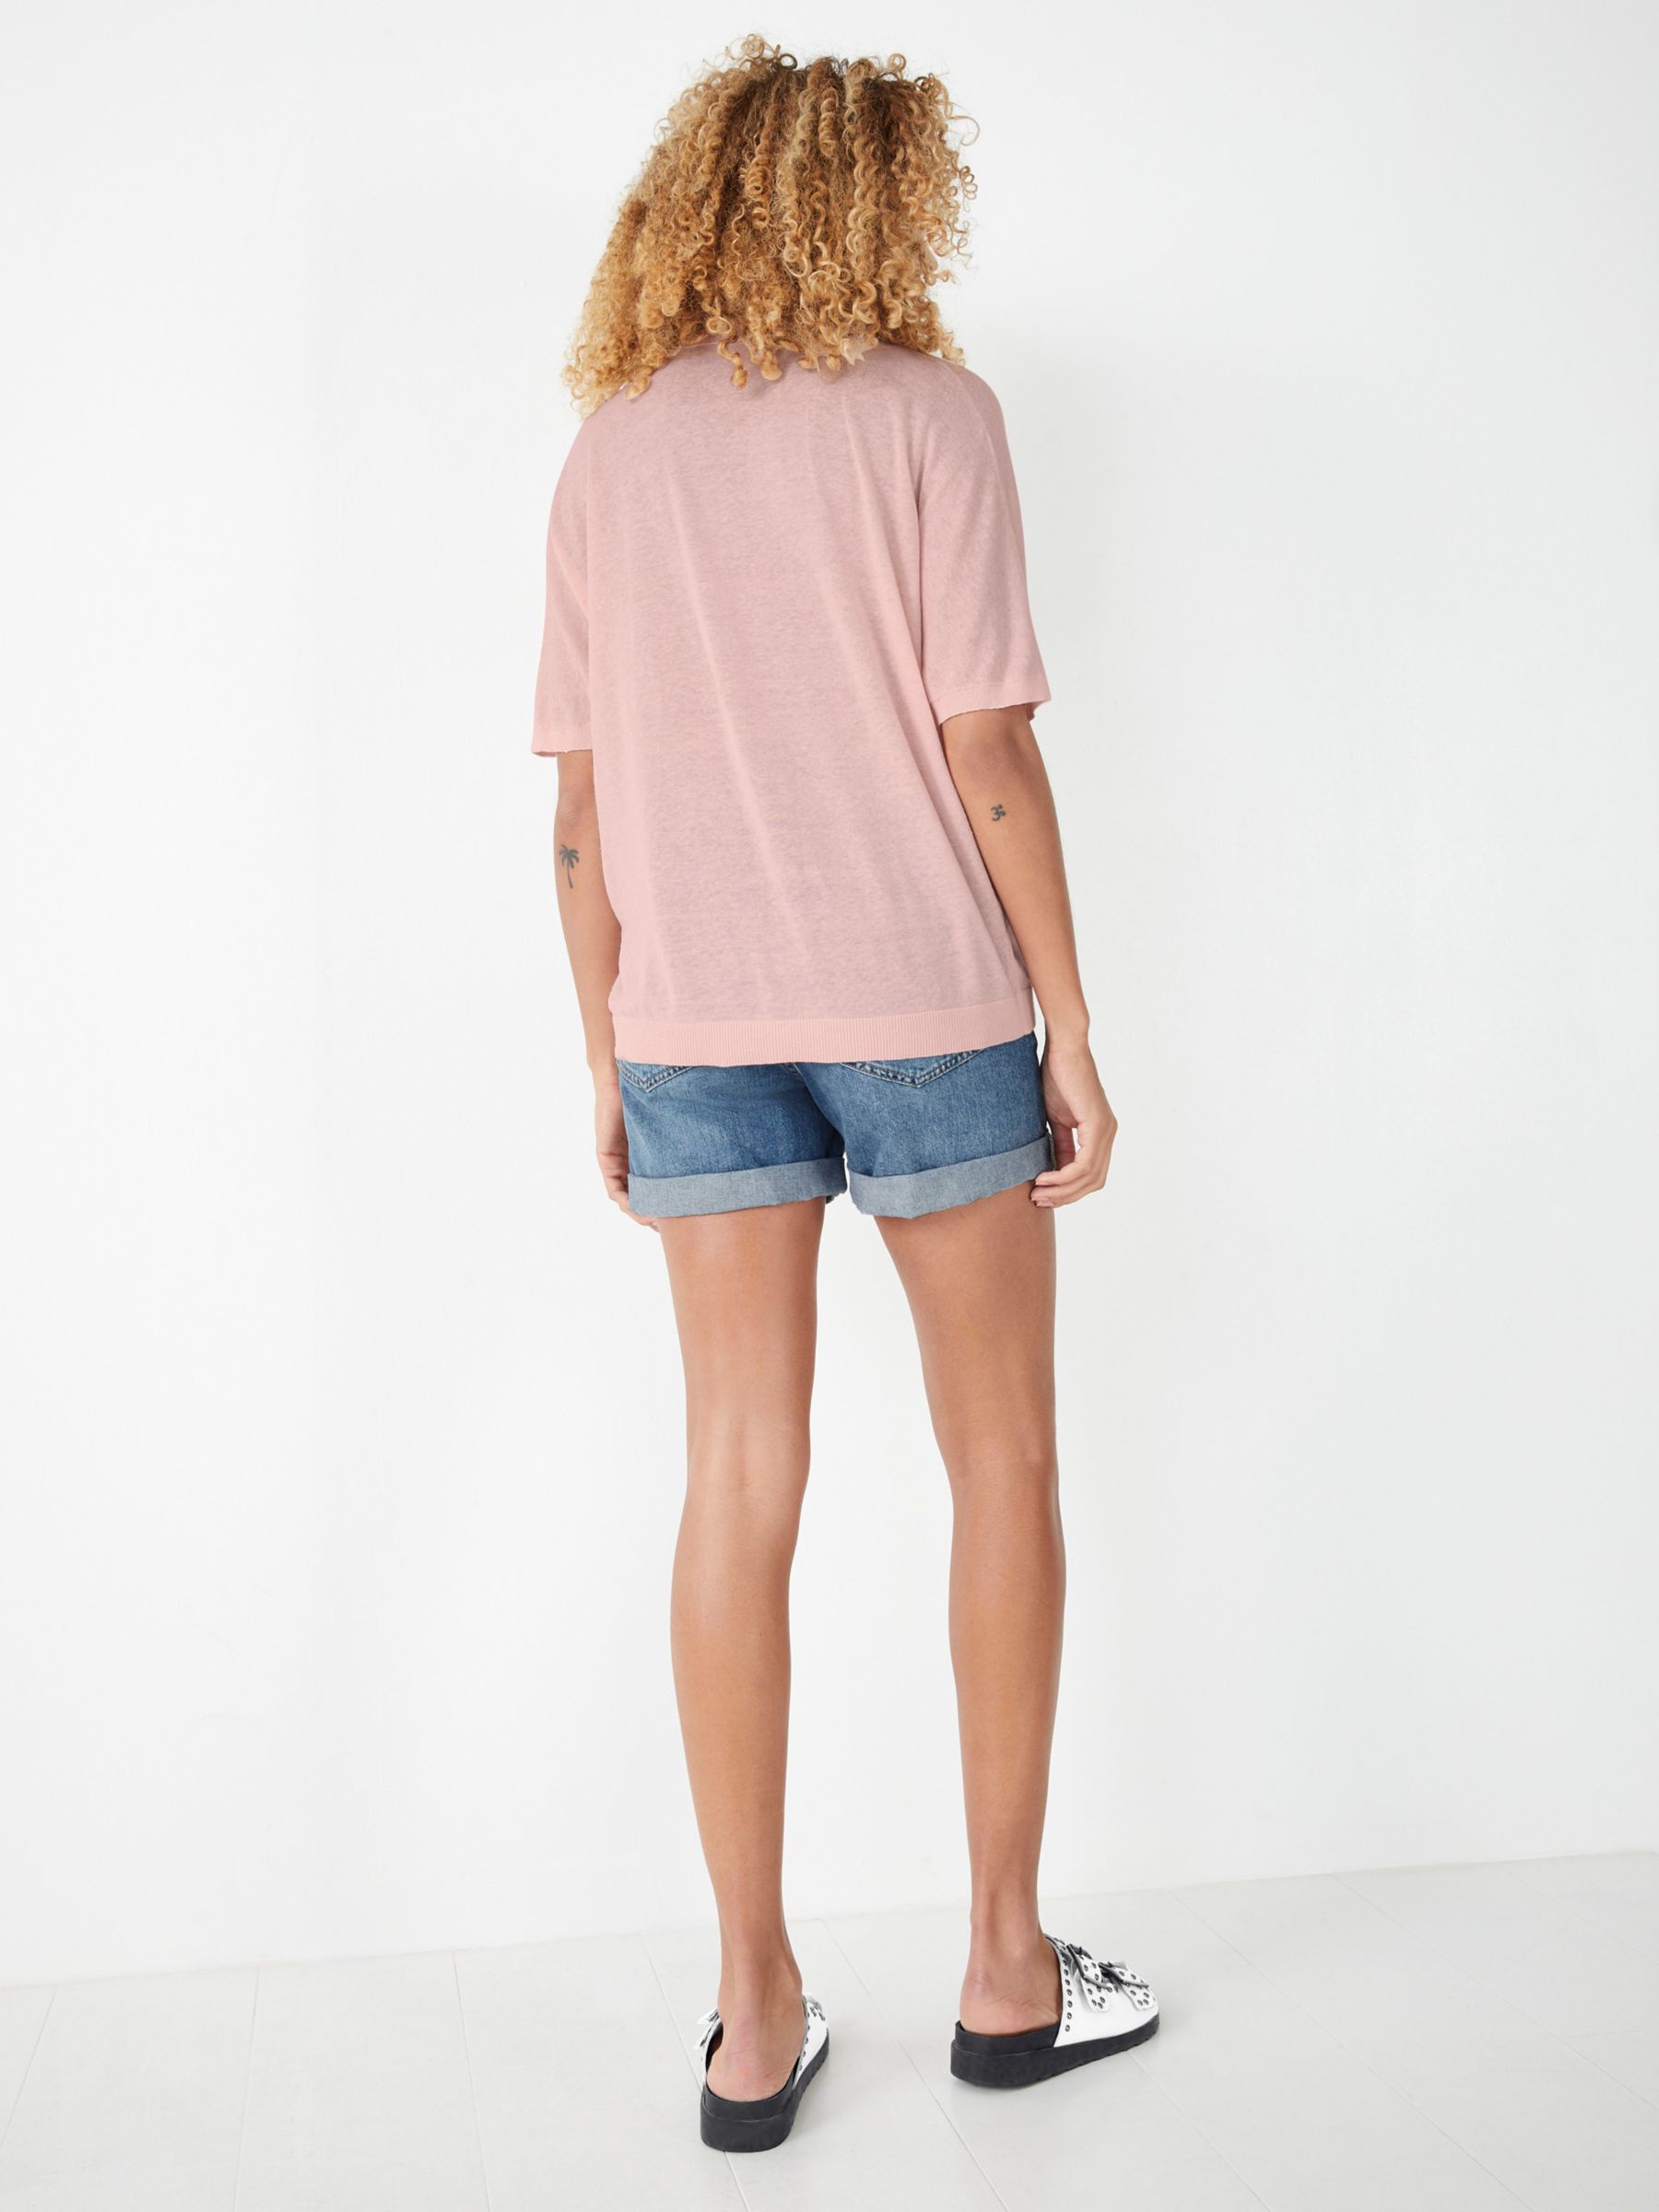 Blush Pink Shorts - Lounge Shorts - Lounge Set - Knit Shorts - Lulus